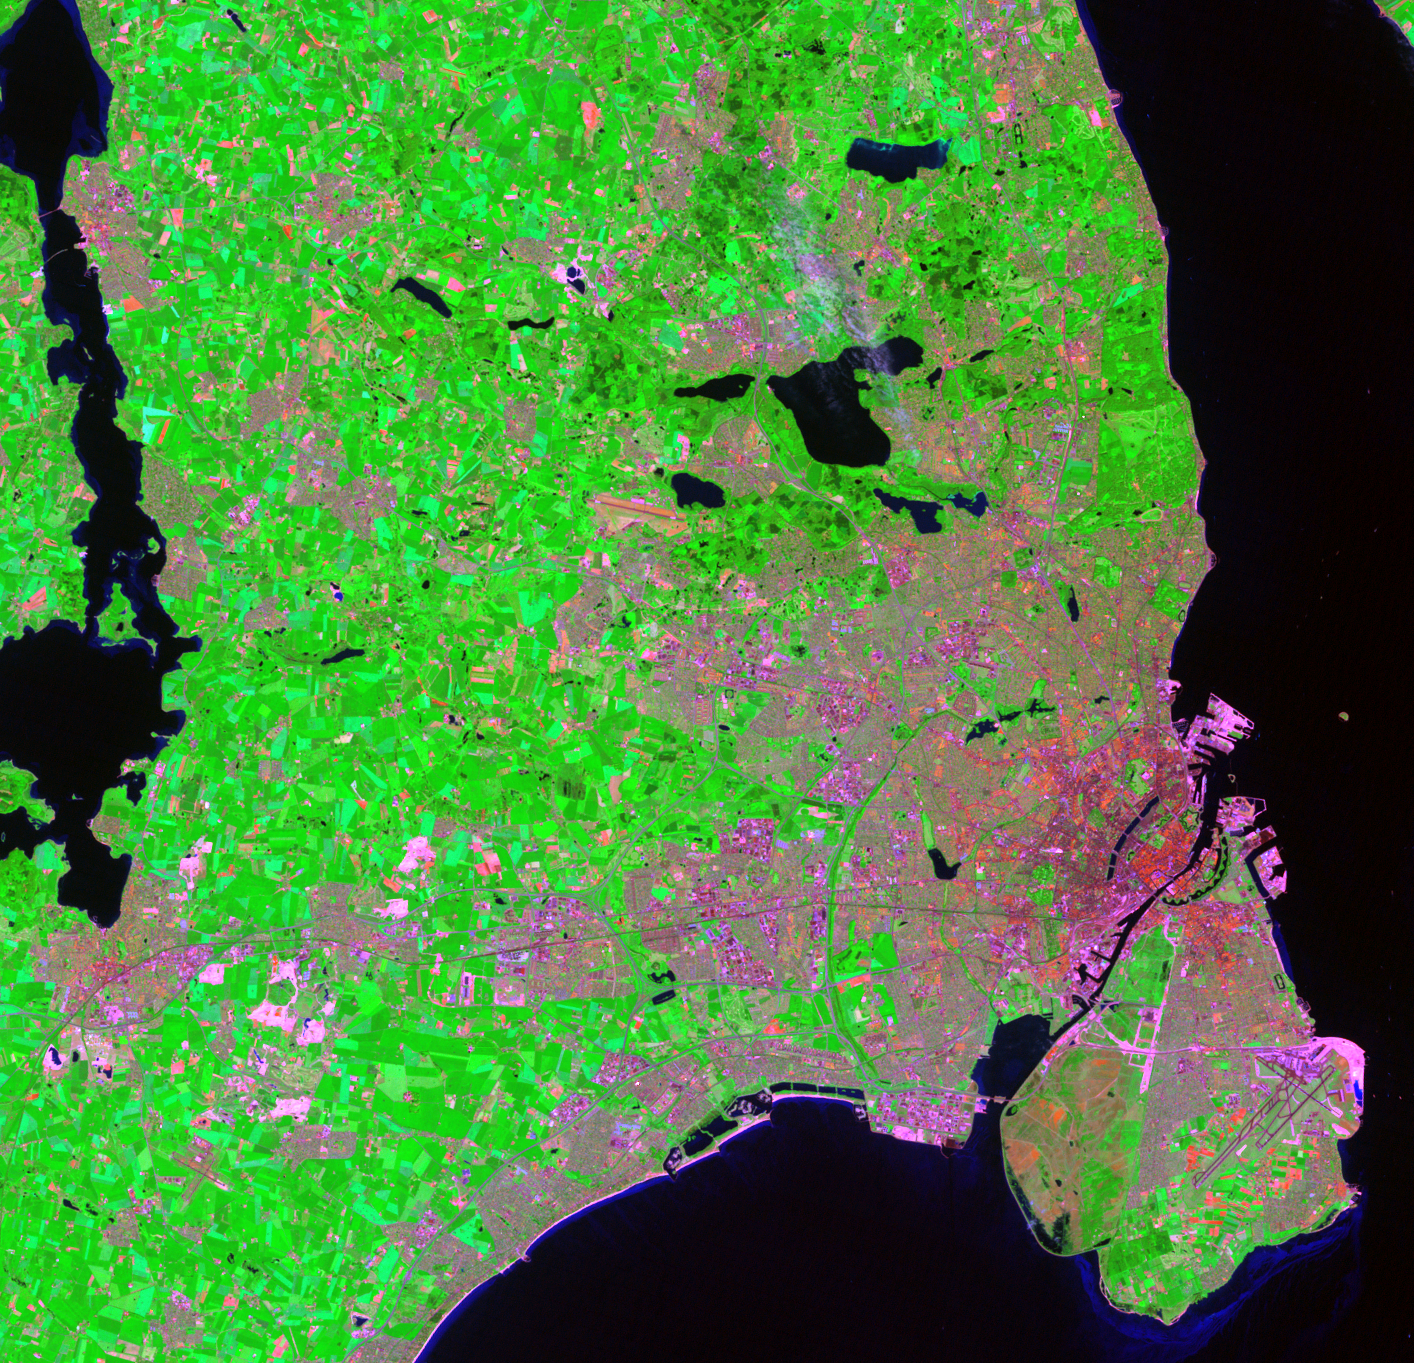 June 21, 1998, Landsat 5 (path/row 194/21) — Copenhagen’s Five-Finger Plan